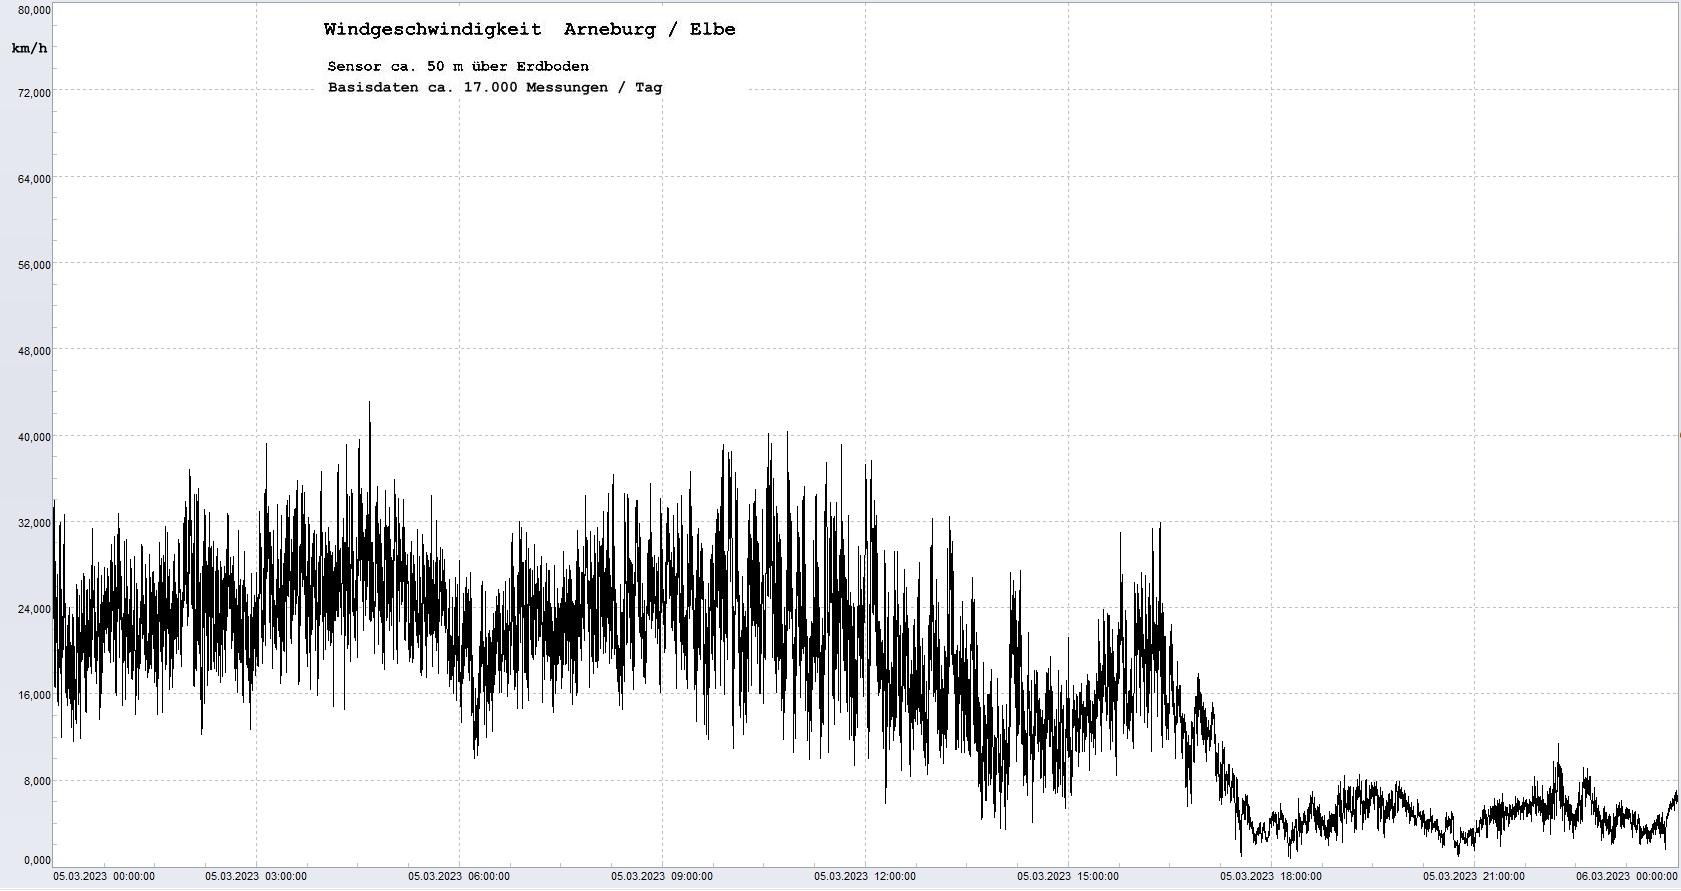 Arneburg Tages-Diagramm Winddaten, 05.03.2023
  Diagramm, Sensor auf Gebude, ca. 50 m ber Erdboden, Basis: 5s-Aufzeichnung